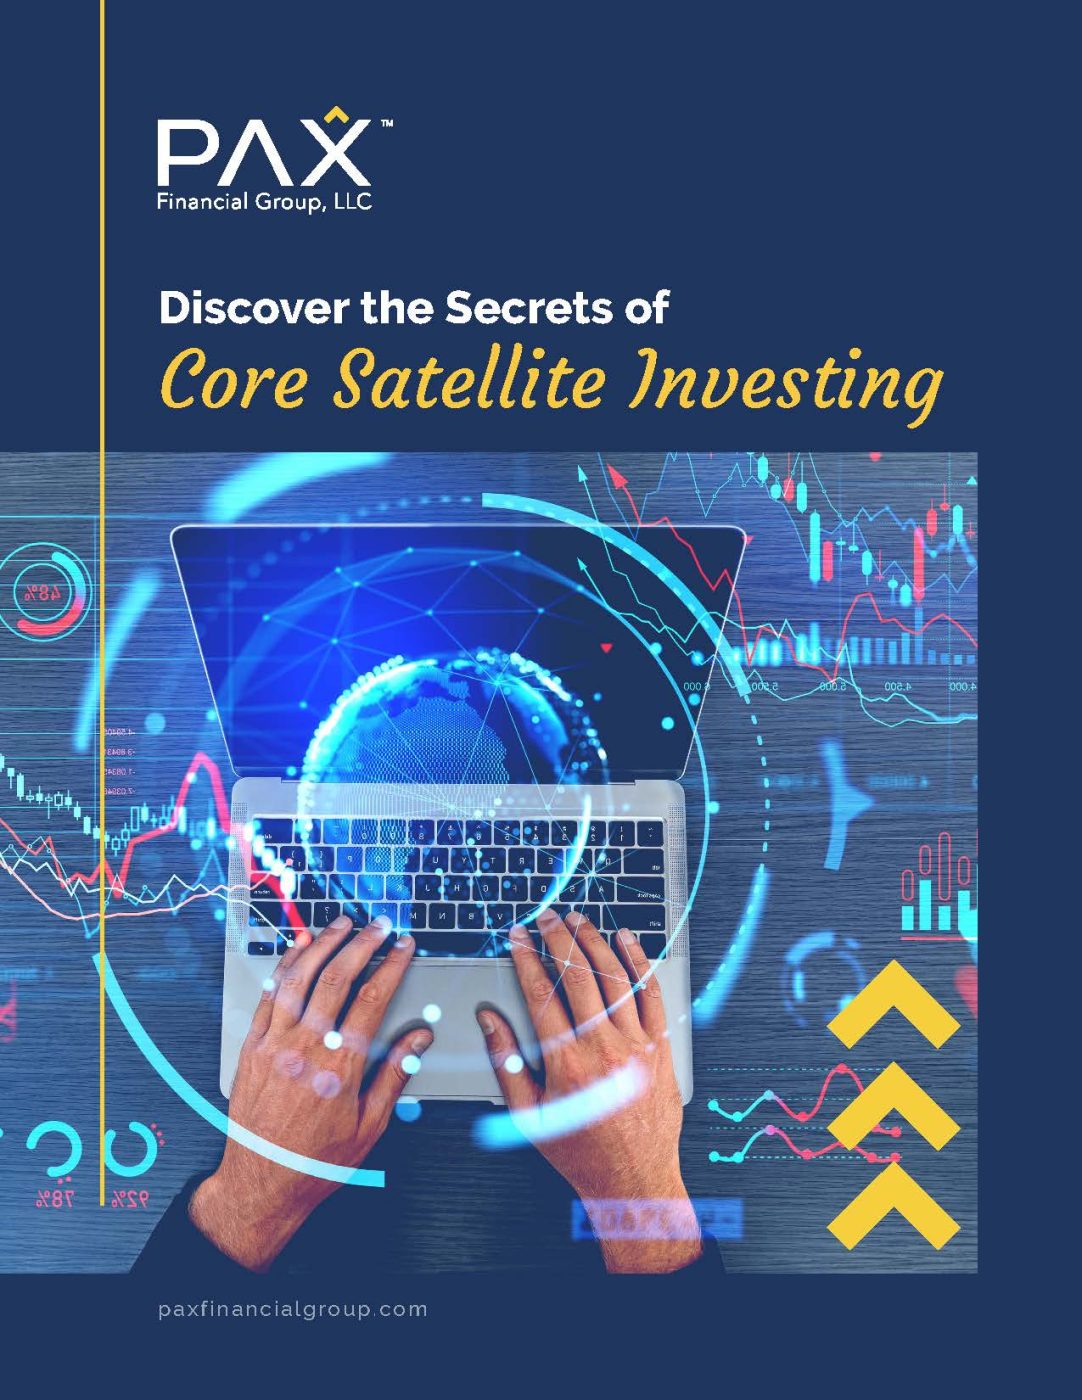 Core Satellite investing